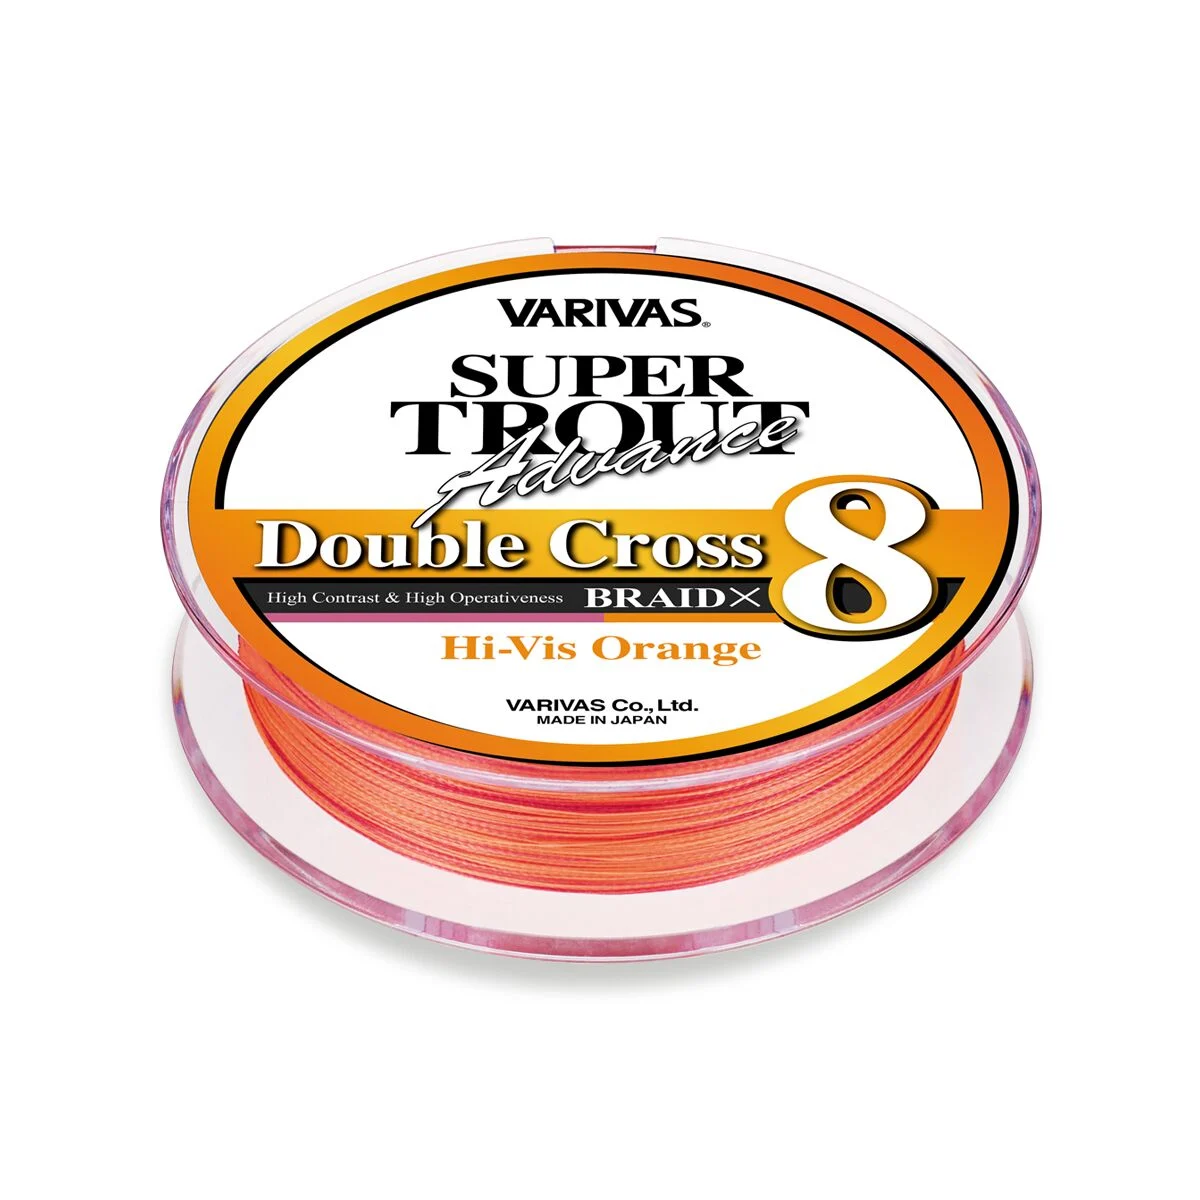 VARIVAS Super Trout Double Cross Buy on line